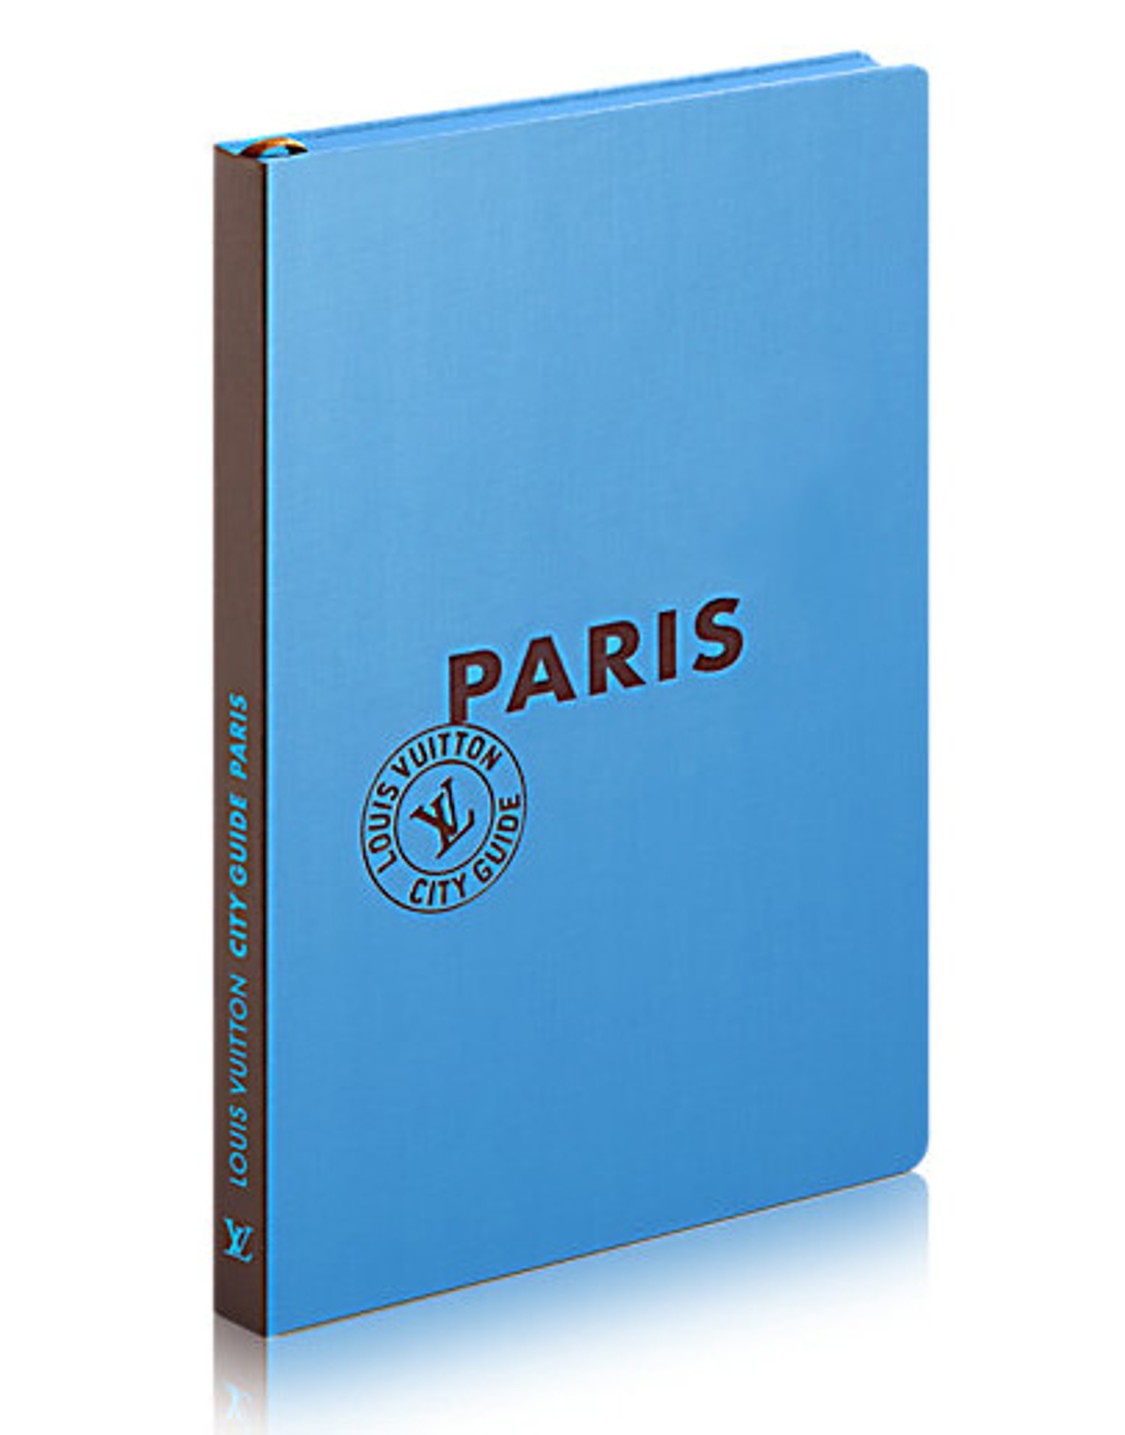 shop Louis Vuitton  Libri: Guida della città Louis Vuitton di Parigi, in versione inglese ed italiana. number 1104